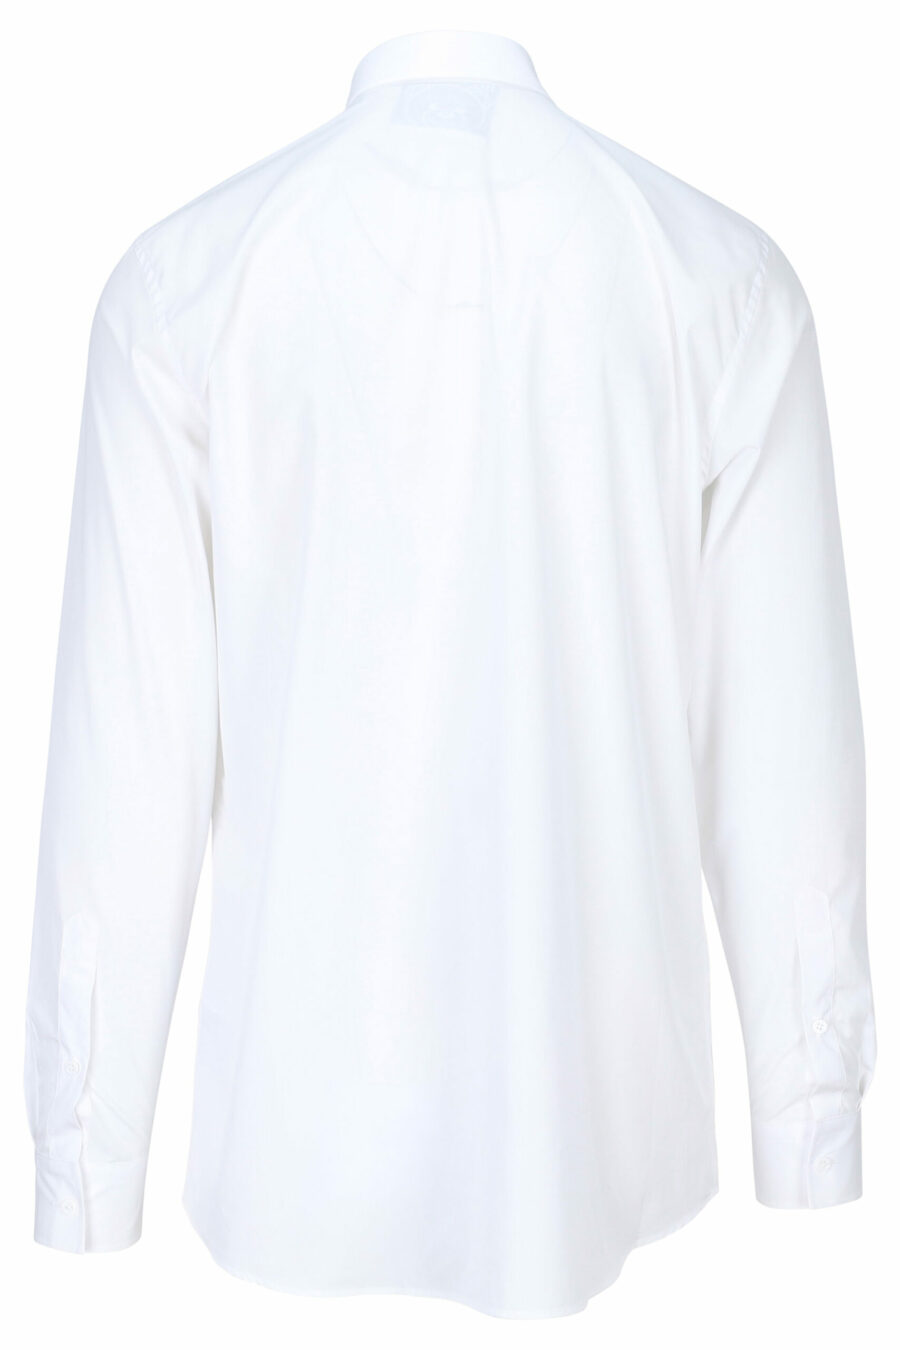 Chemise blanche avec mini-logo teddy brodé - 889316631326 1 à l'échelle